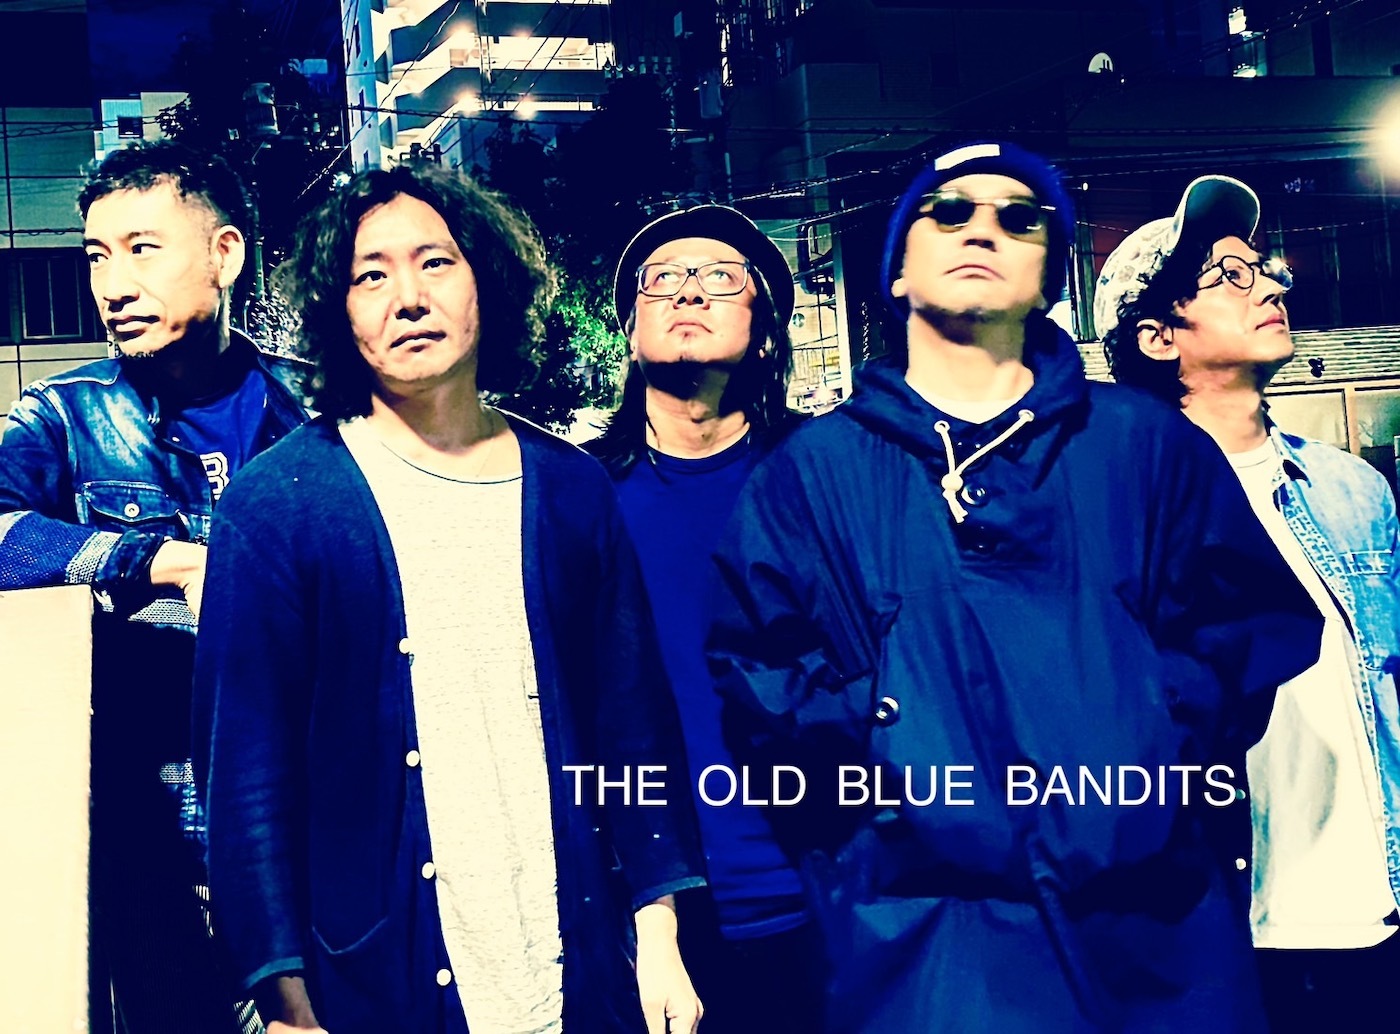 ⼤森南朋&THE OLD BLUE BANDITS